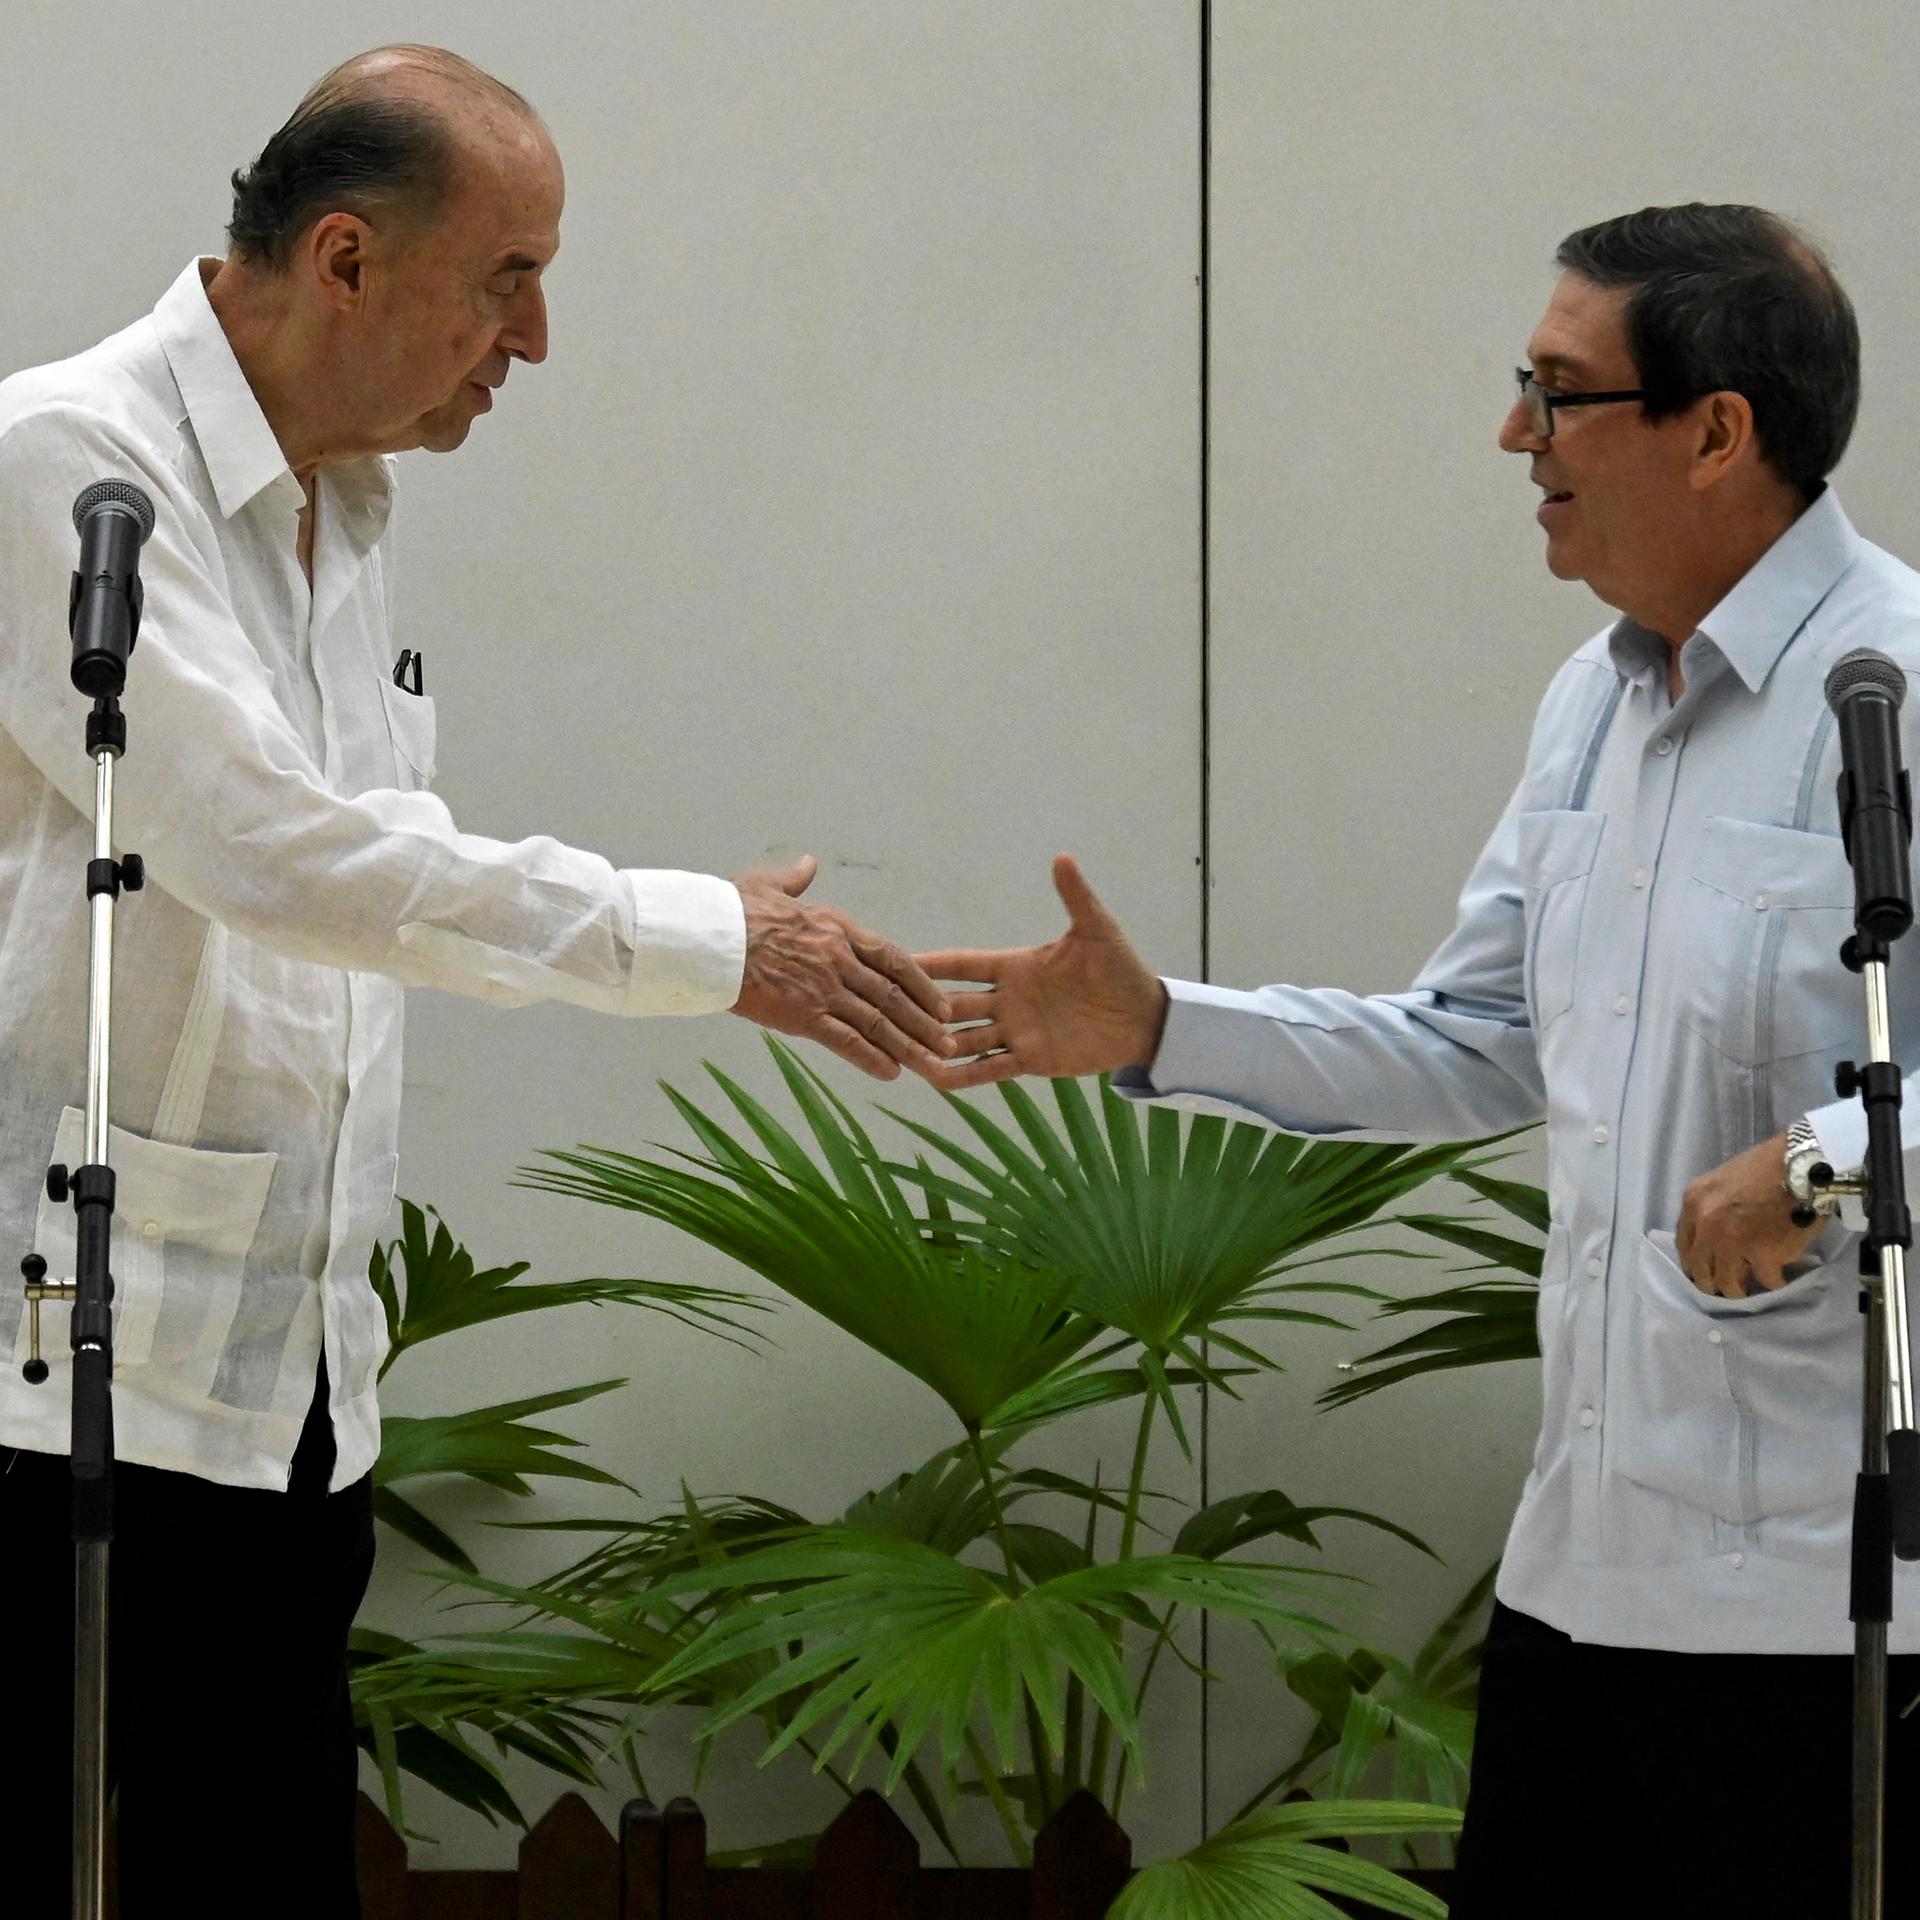 Der kubanische Außenminister Bruno Rodriguez schüttelt seinem kolumbianischen Amtskollegen Alvaro Leyva Duran die Hand.